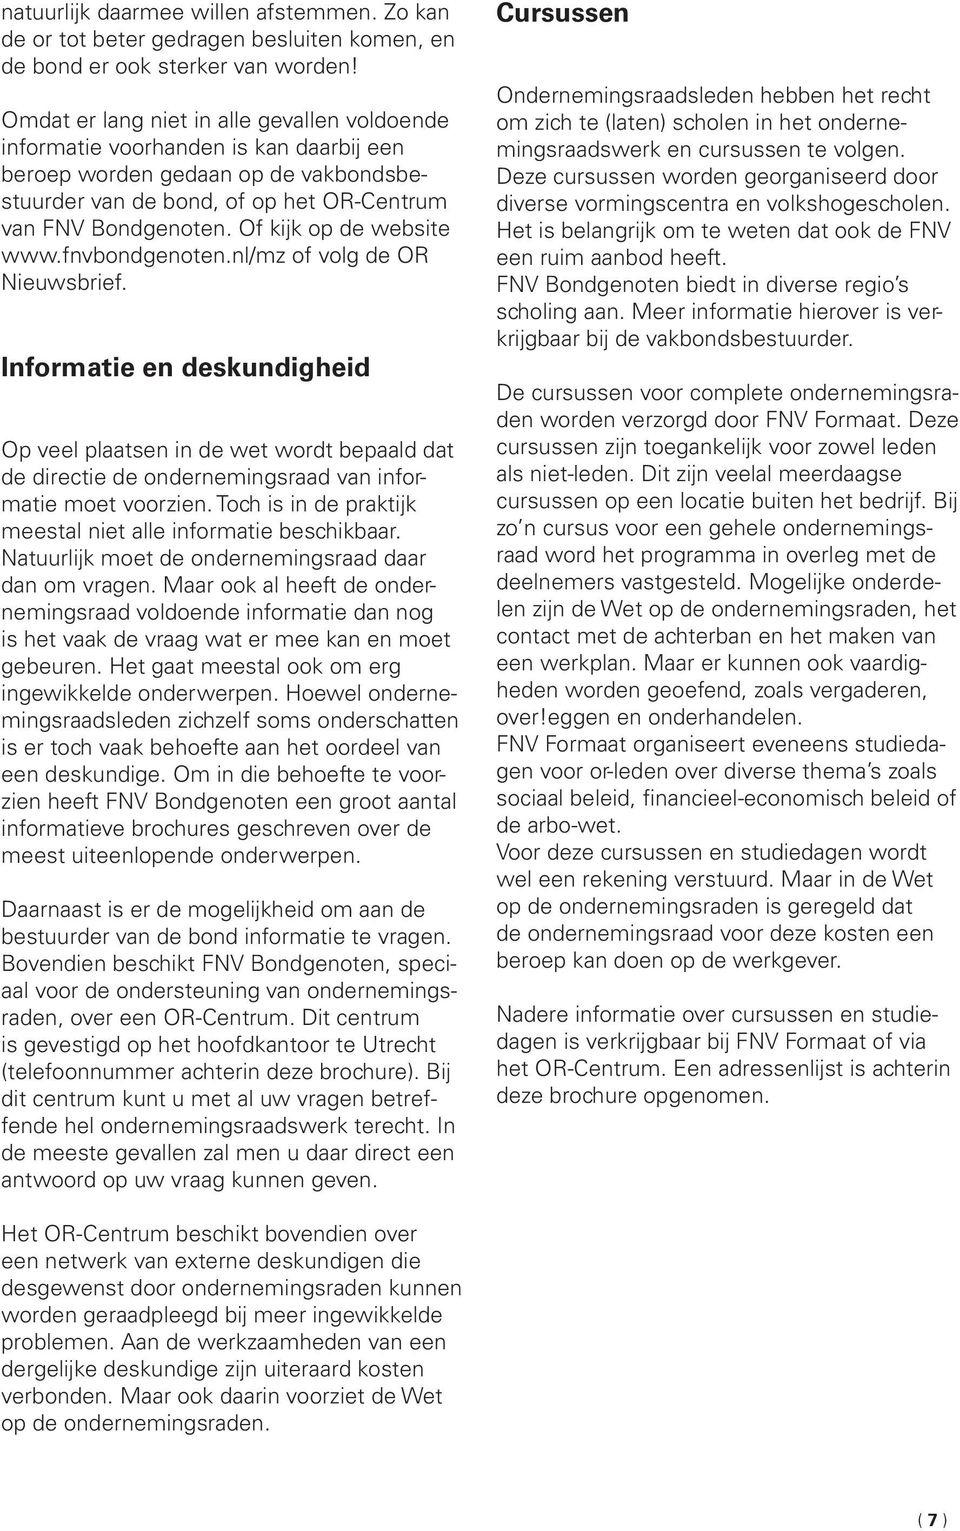 Of kijk op de website www.fnvbondgenoten.nl/mz of volg de OR Nieuwsbrief.